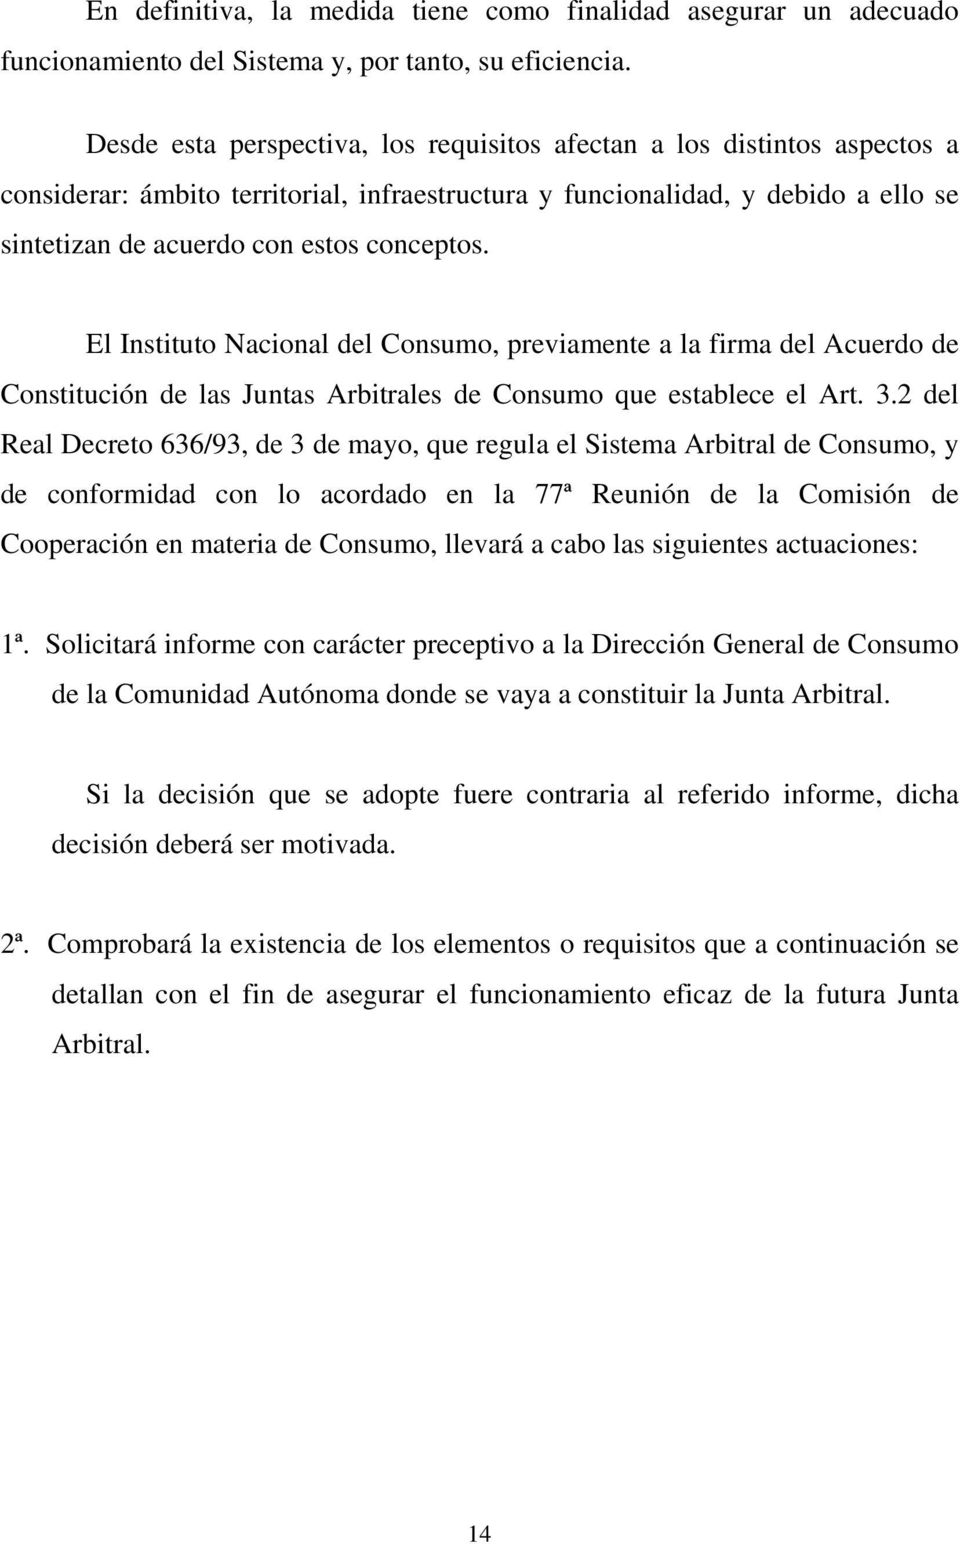 El Instituto Nacional del Consumo, previamente a la firma del Acuerdo de Constitución de las Juntas Arbitrales de Consumo que establece el Art. 3.